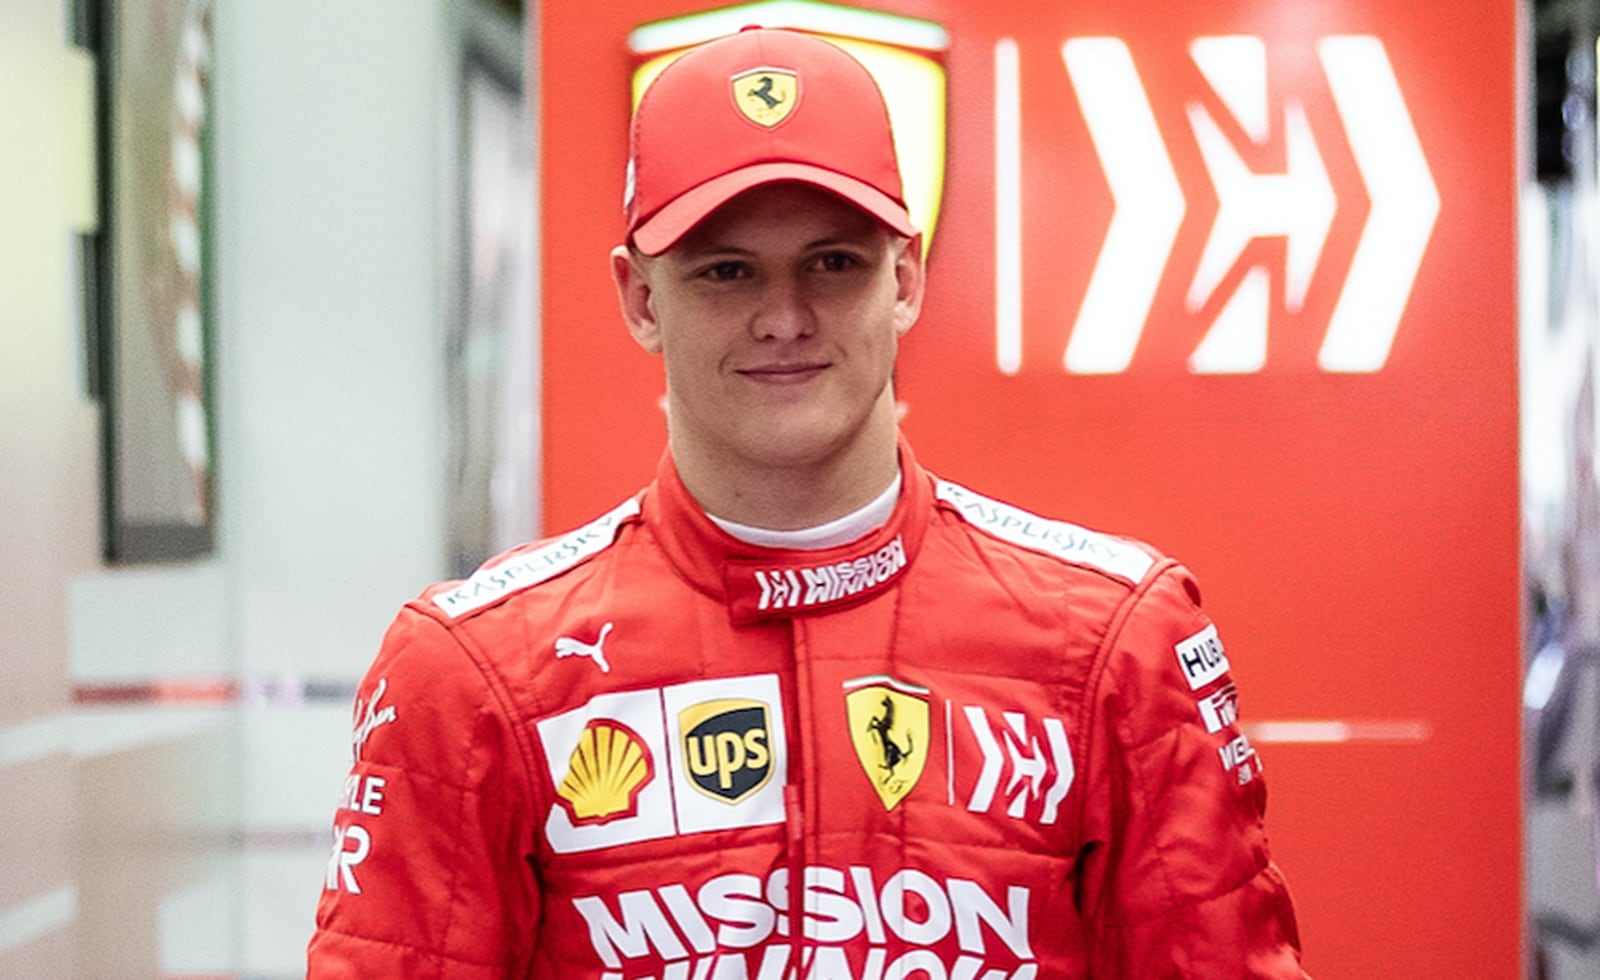 Mick Schumacher llega a Ferrari para el 2022 en la Fórmula 1